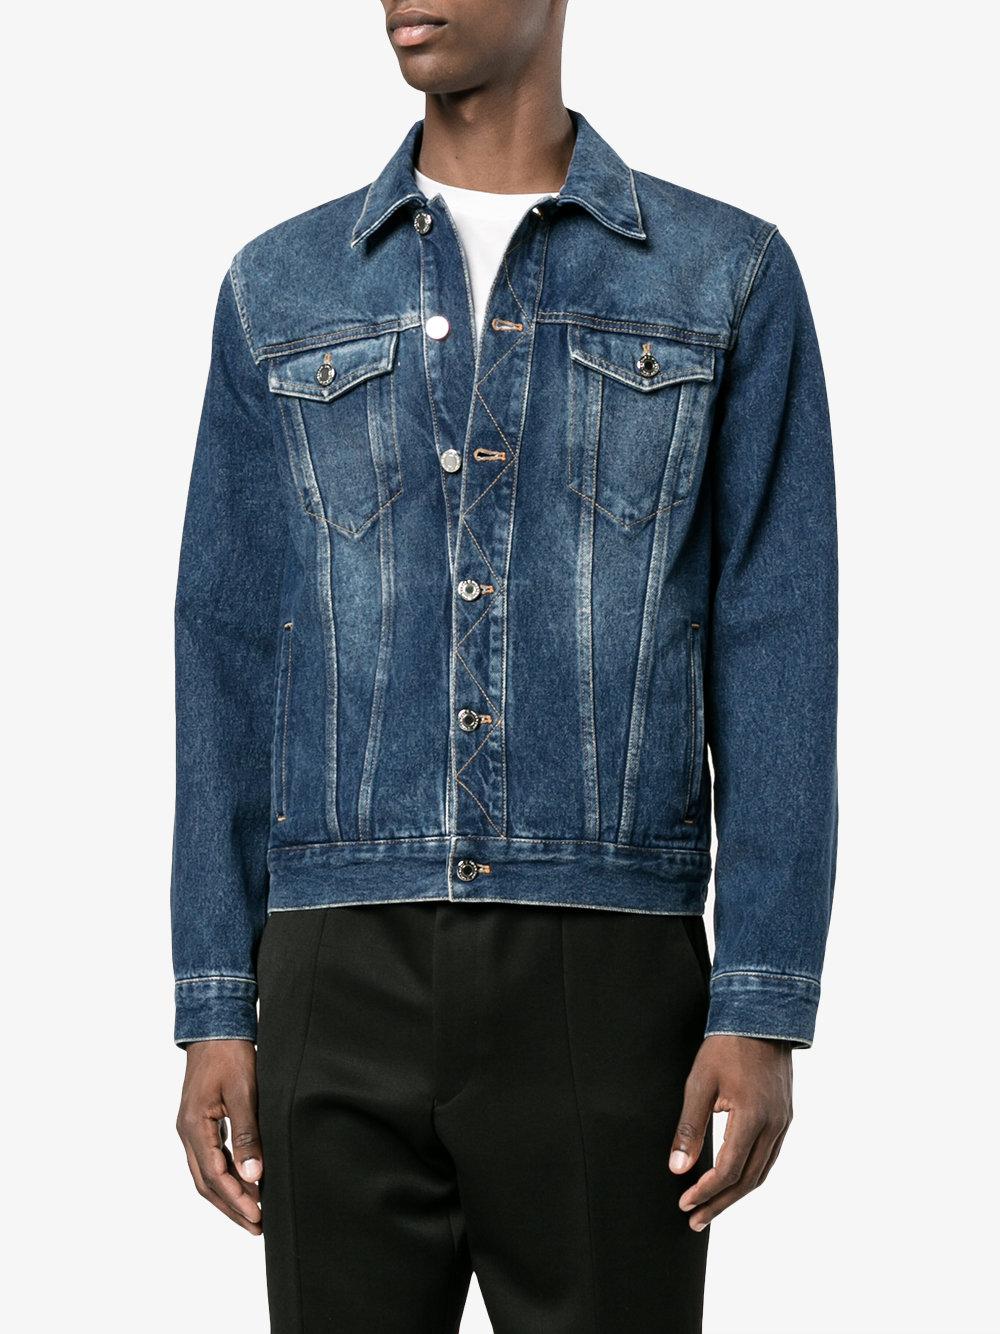 Givenchy Logo Print Denim Jacket in Blue for Men - Lyst